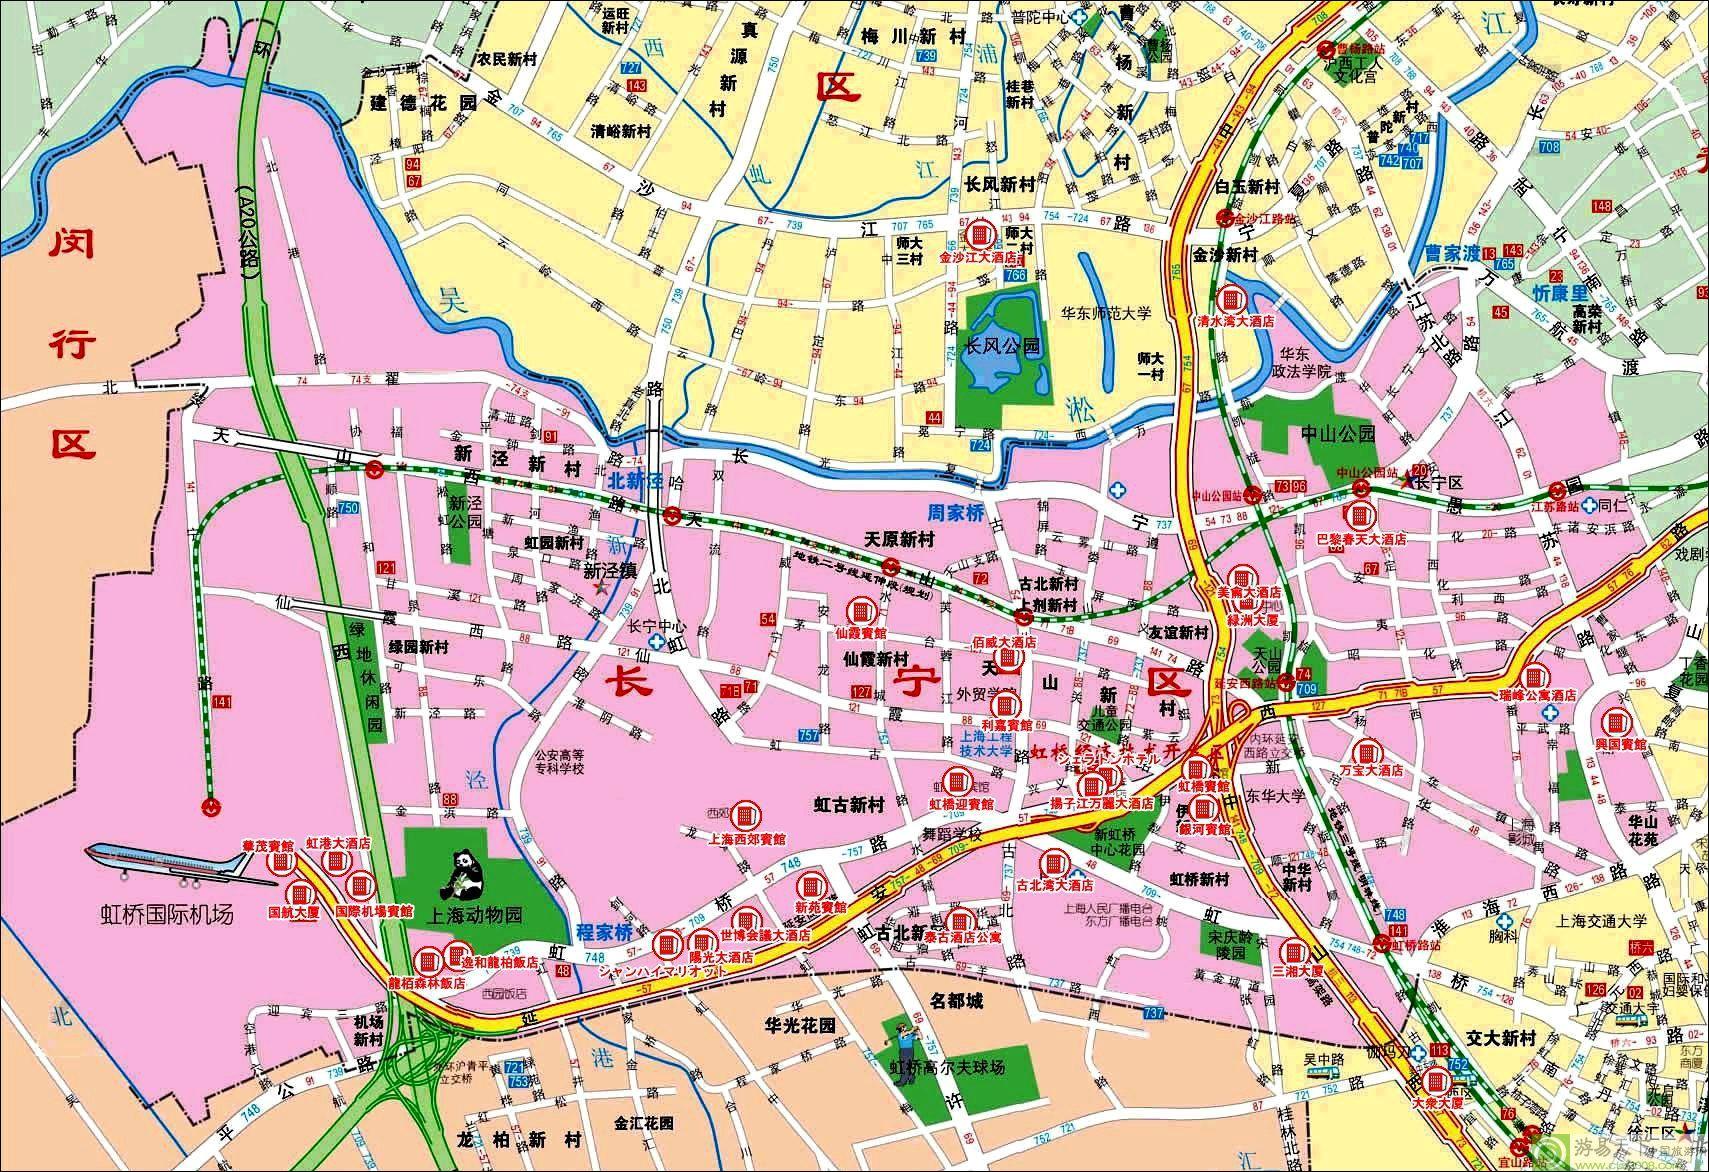 全部版本 历史版本  长宁区是上海市的一个市辖区,位于西部,东连静安